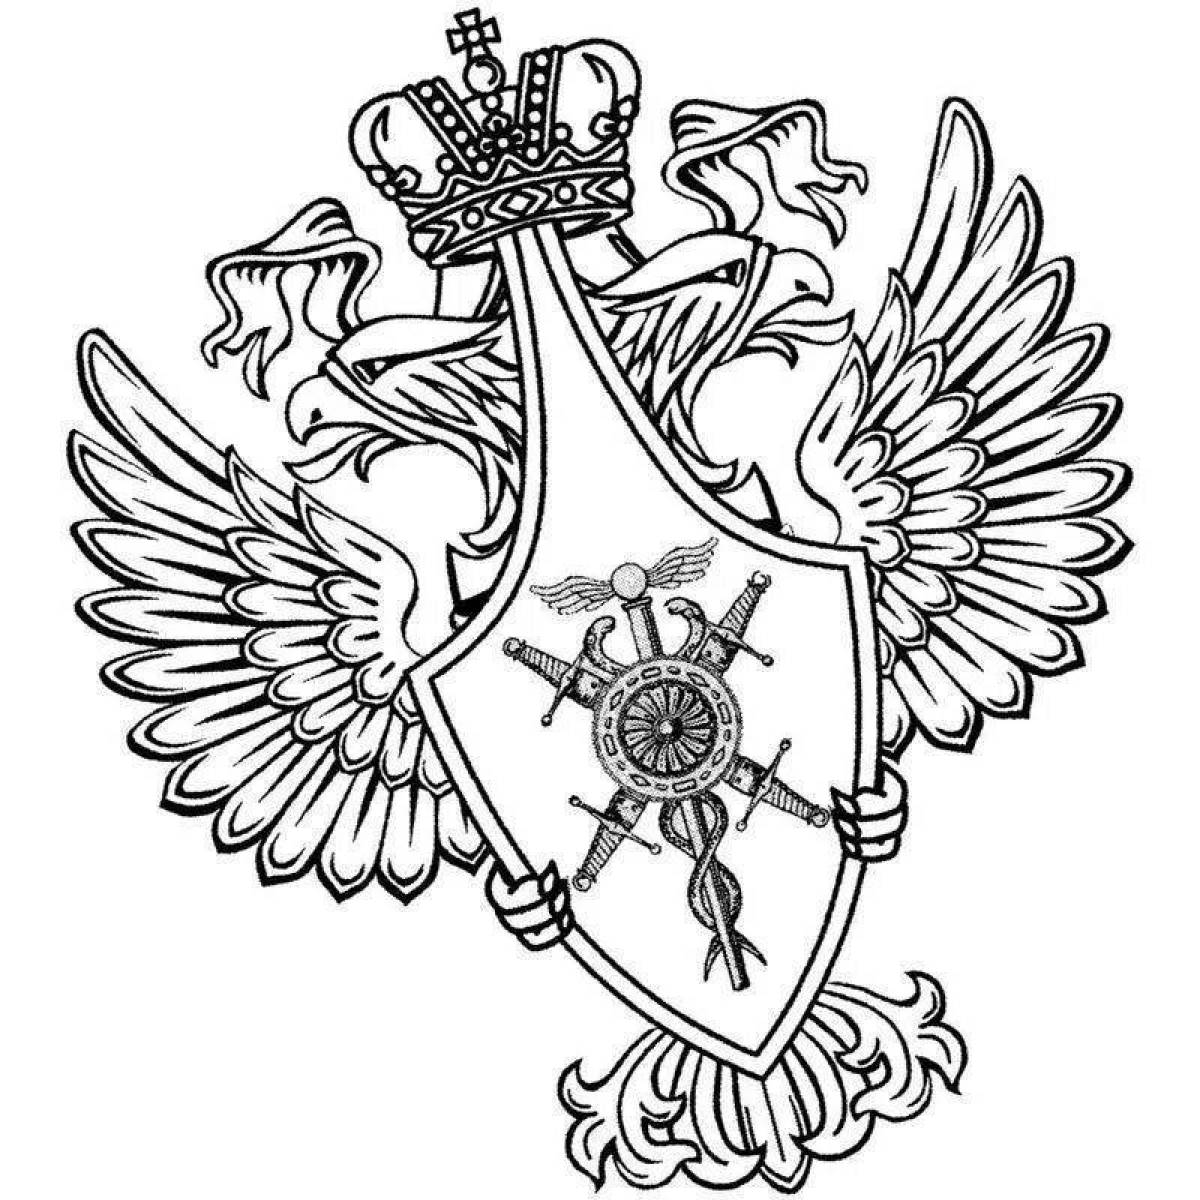 Грандиозный флаг и герб россии